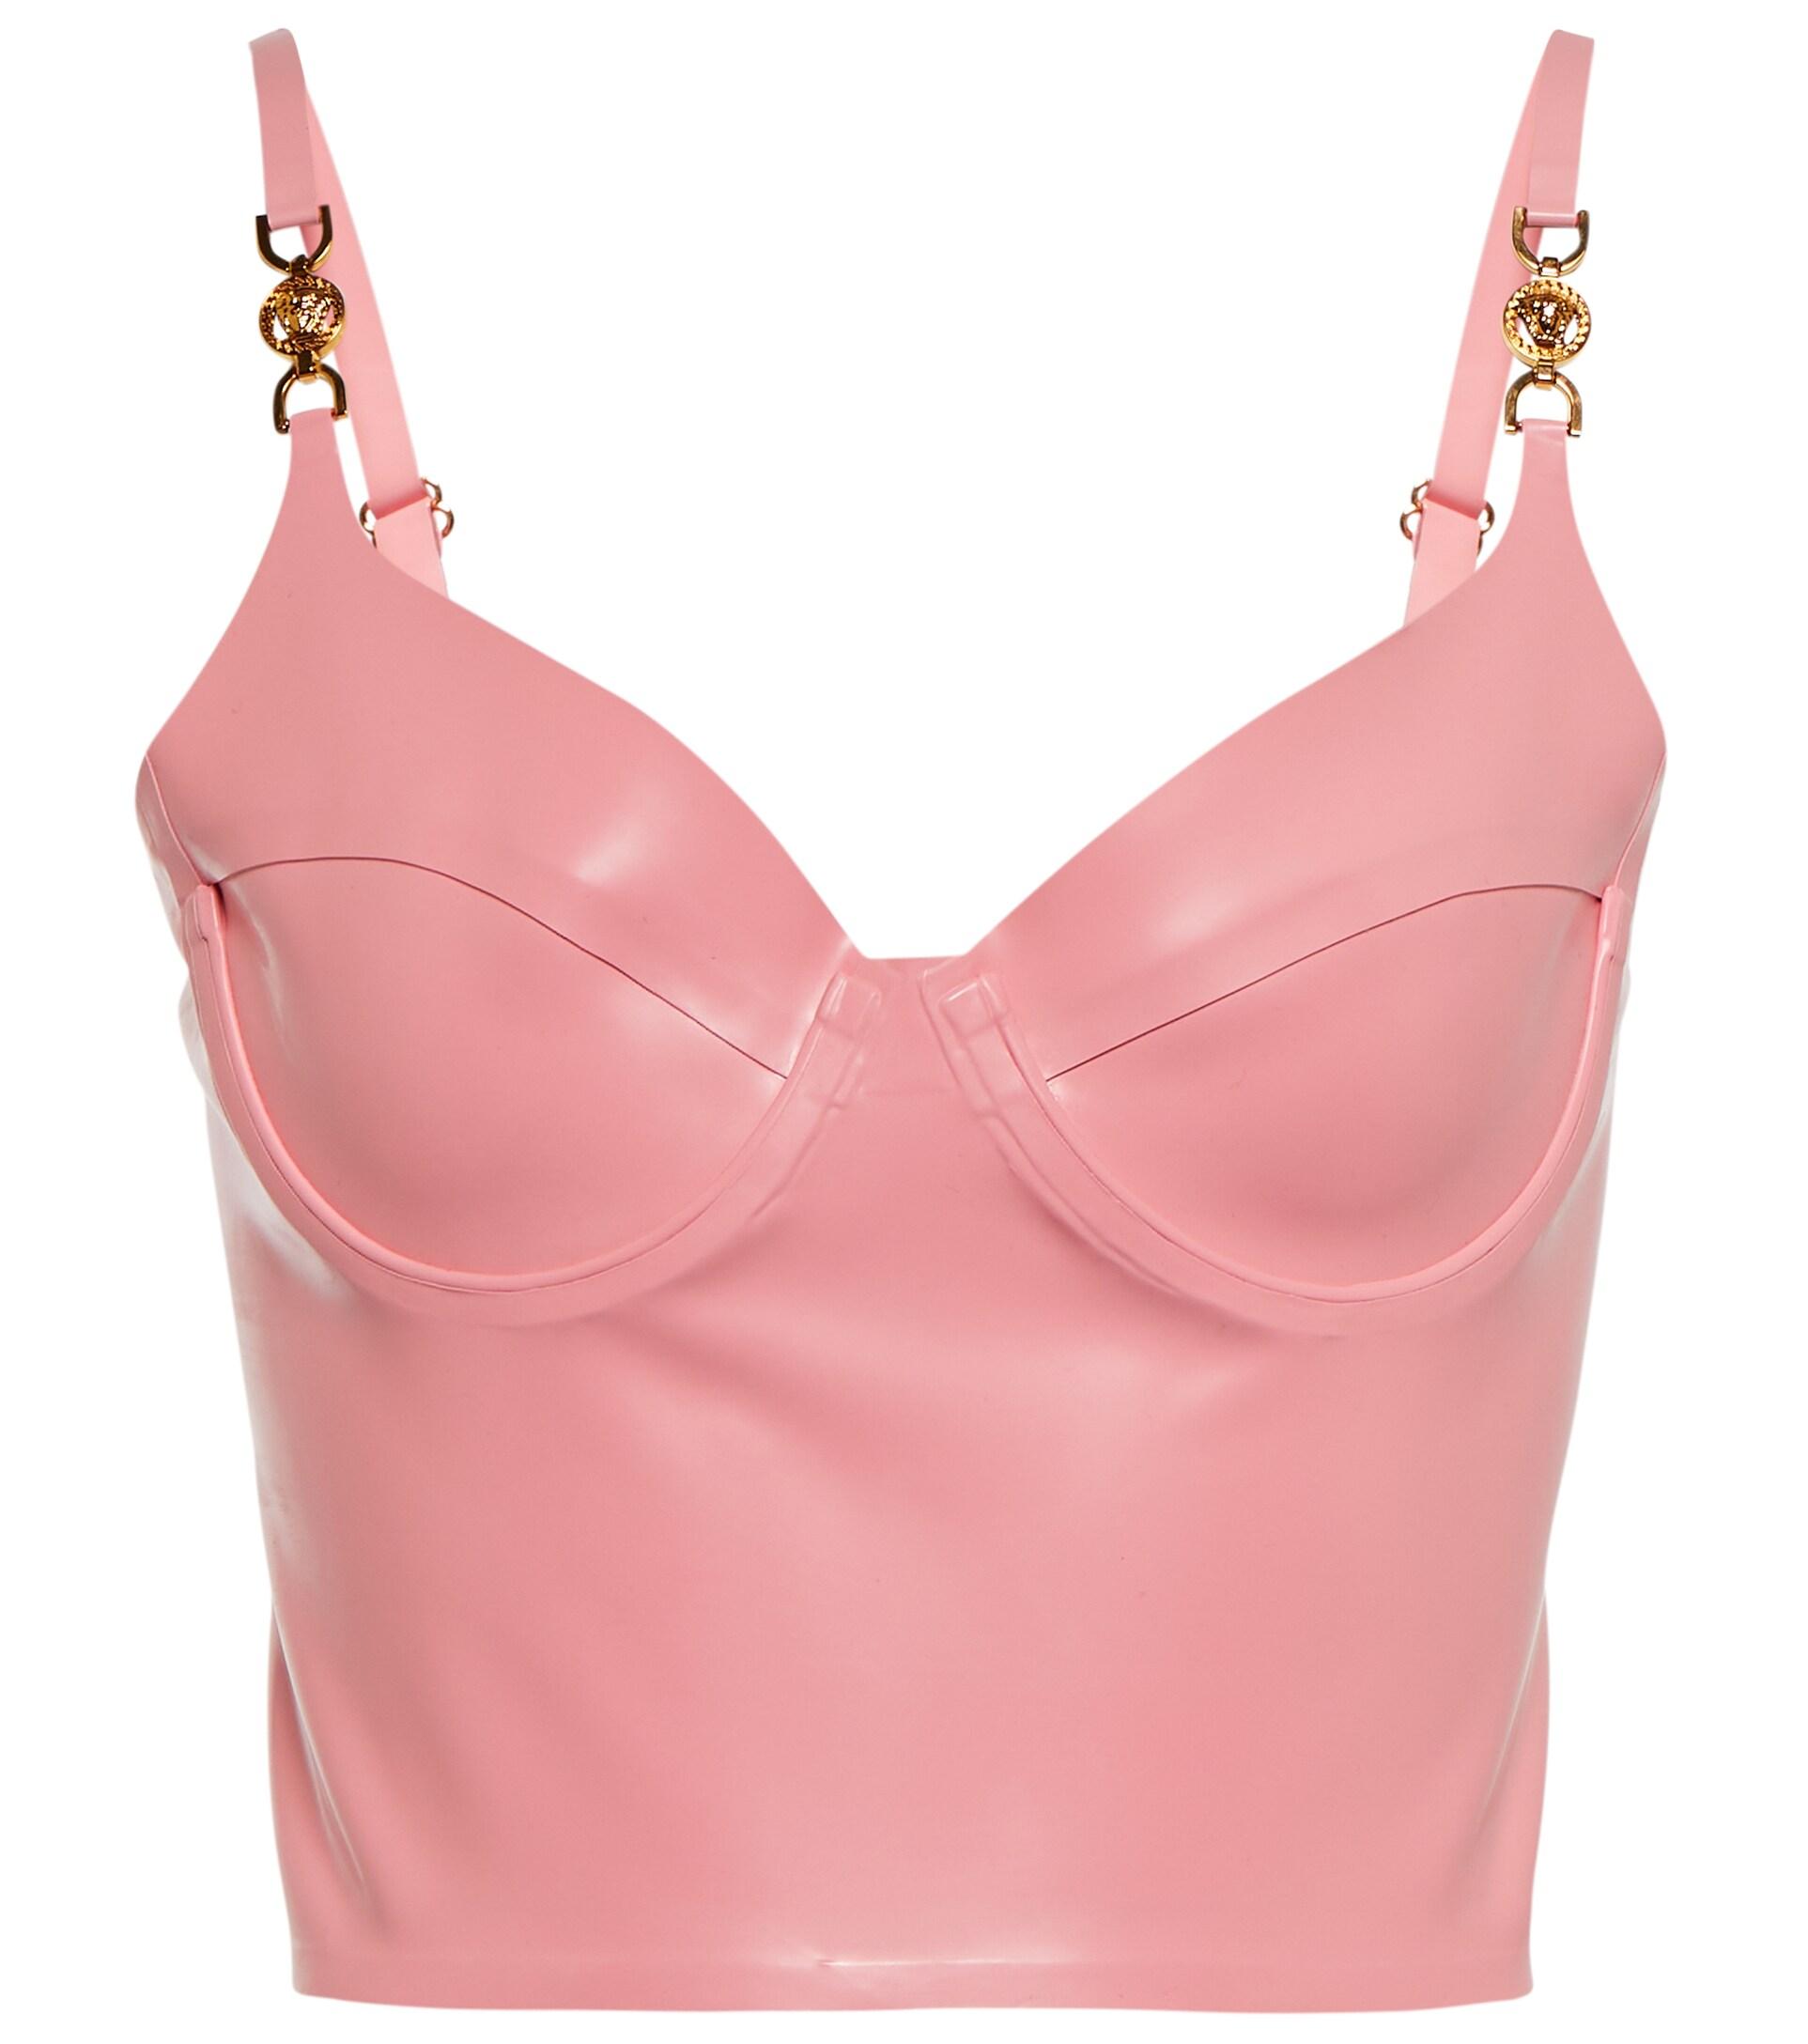 $1425 Versace Women's Pink Solid Medusa top Bra Crop Size 44